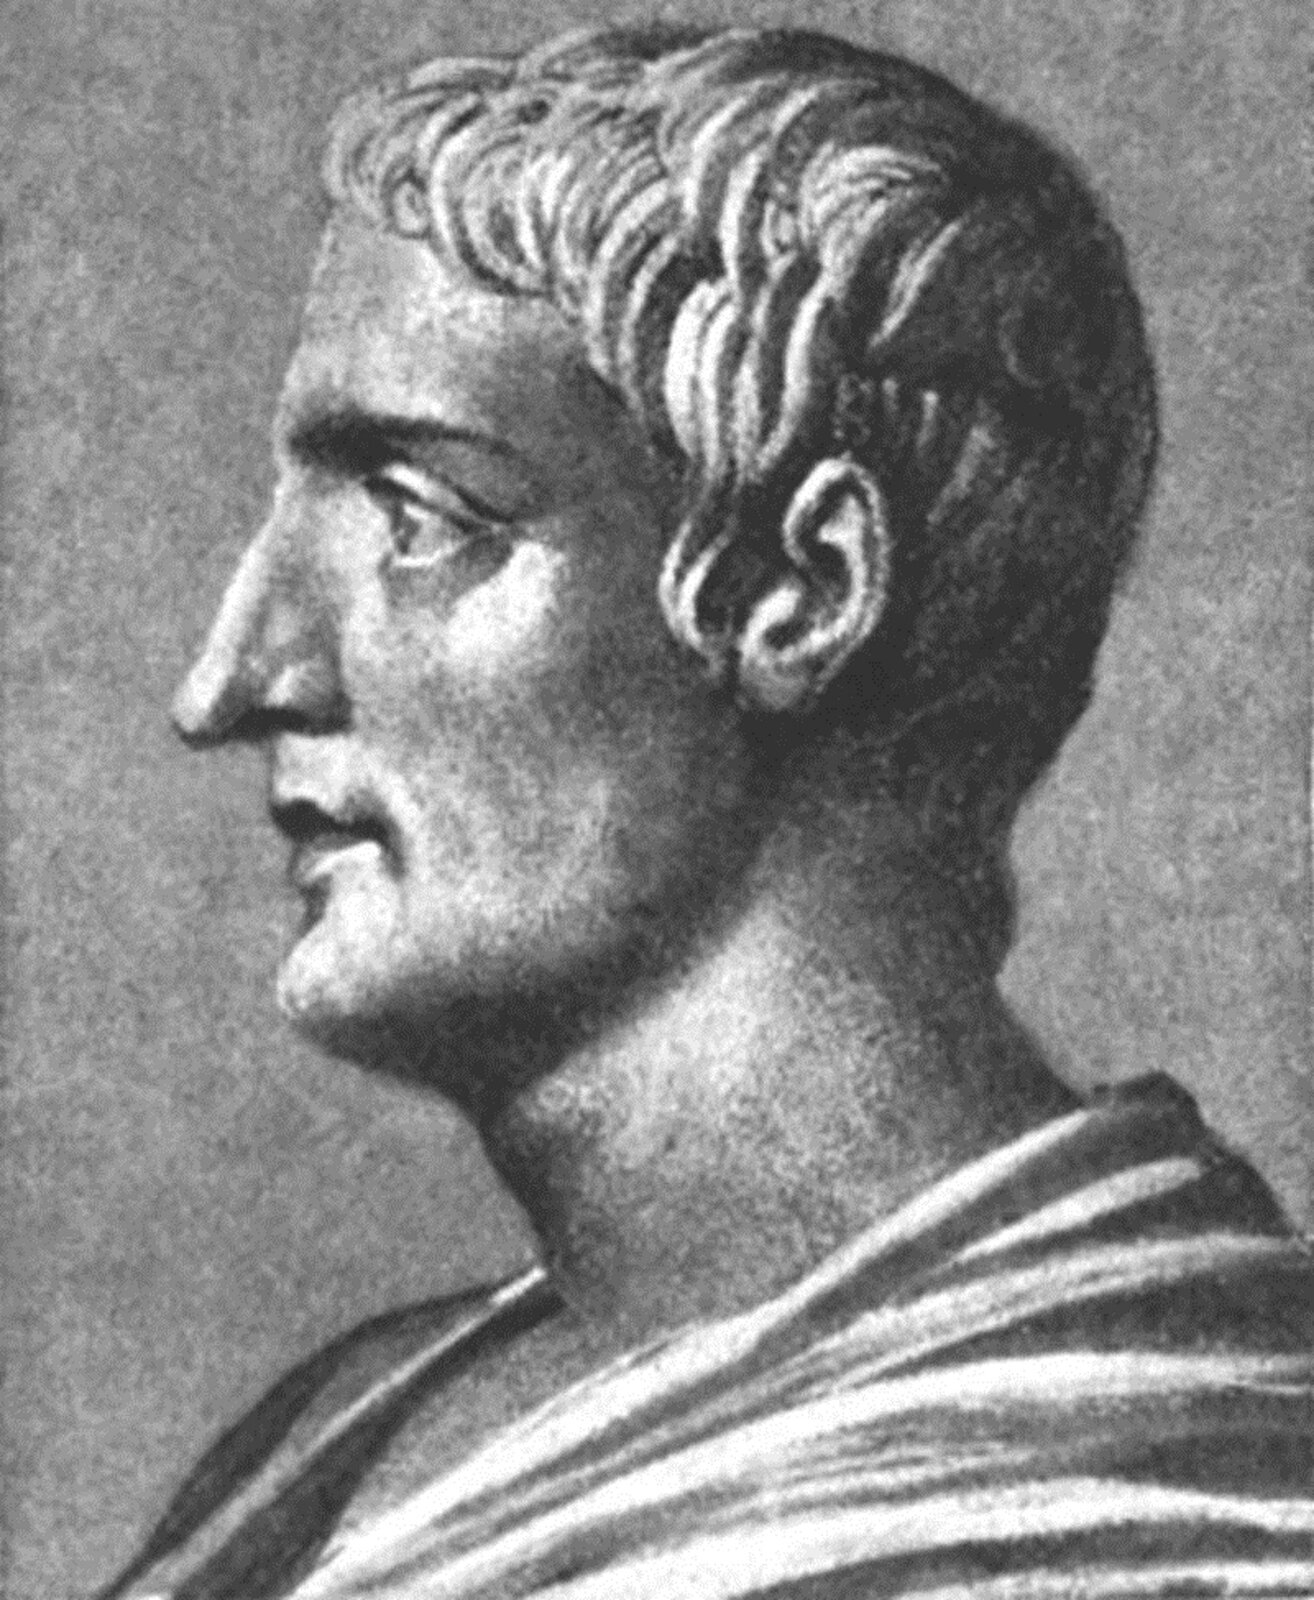 Ilustracja przedstawia portret Publiusza Korneliusza Tacyta. Obraz jest w kolorze czarno-białym. Na obrazie znajduje się mężczyzna widoczny z profilu.